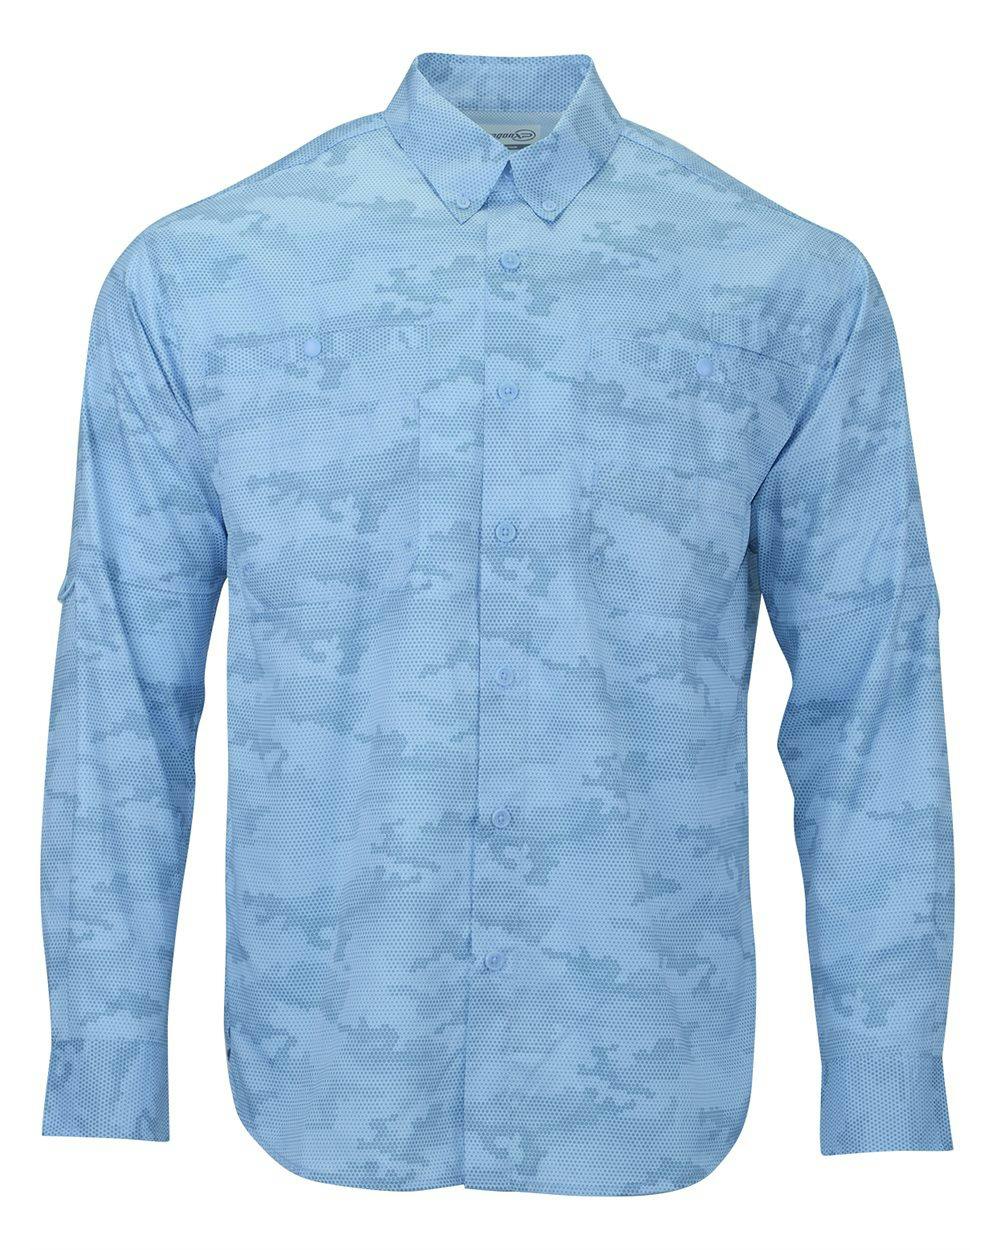 Image for Buxton Sublimated Long Sleeve Fishing Shirt - 709